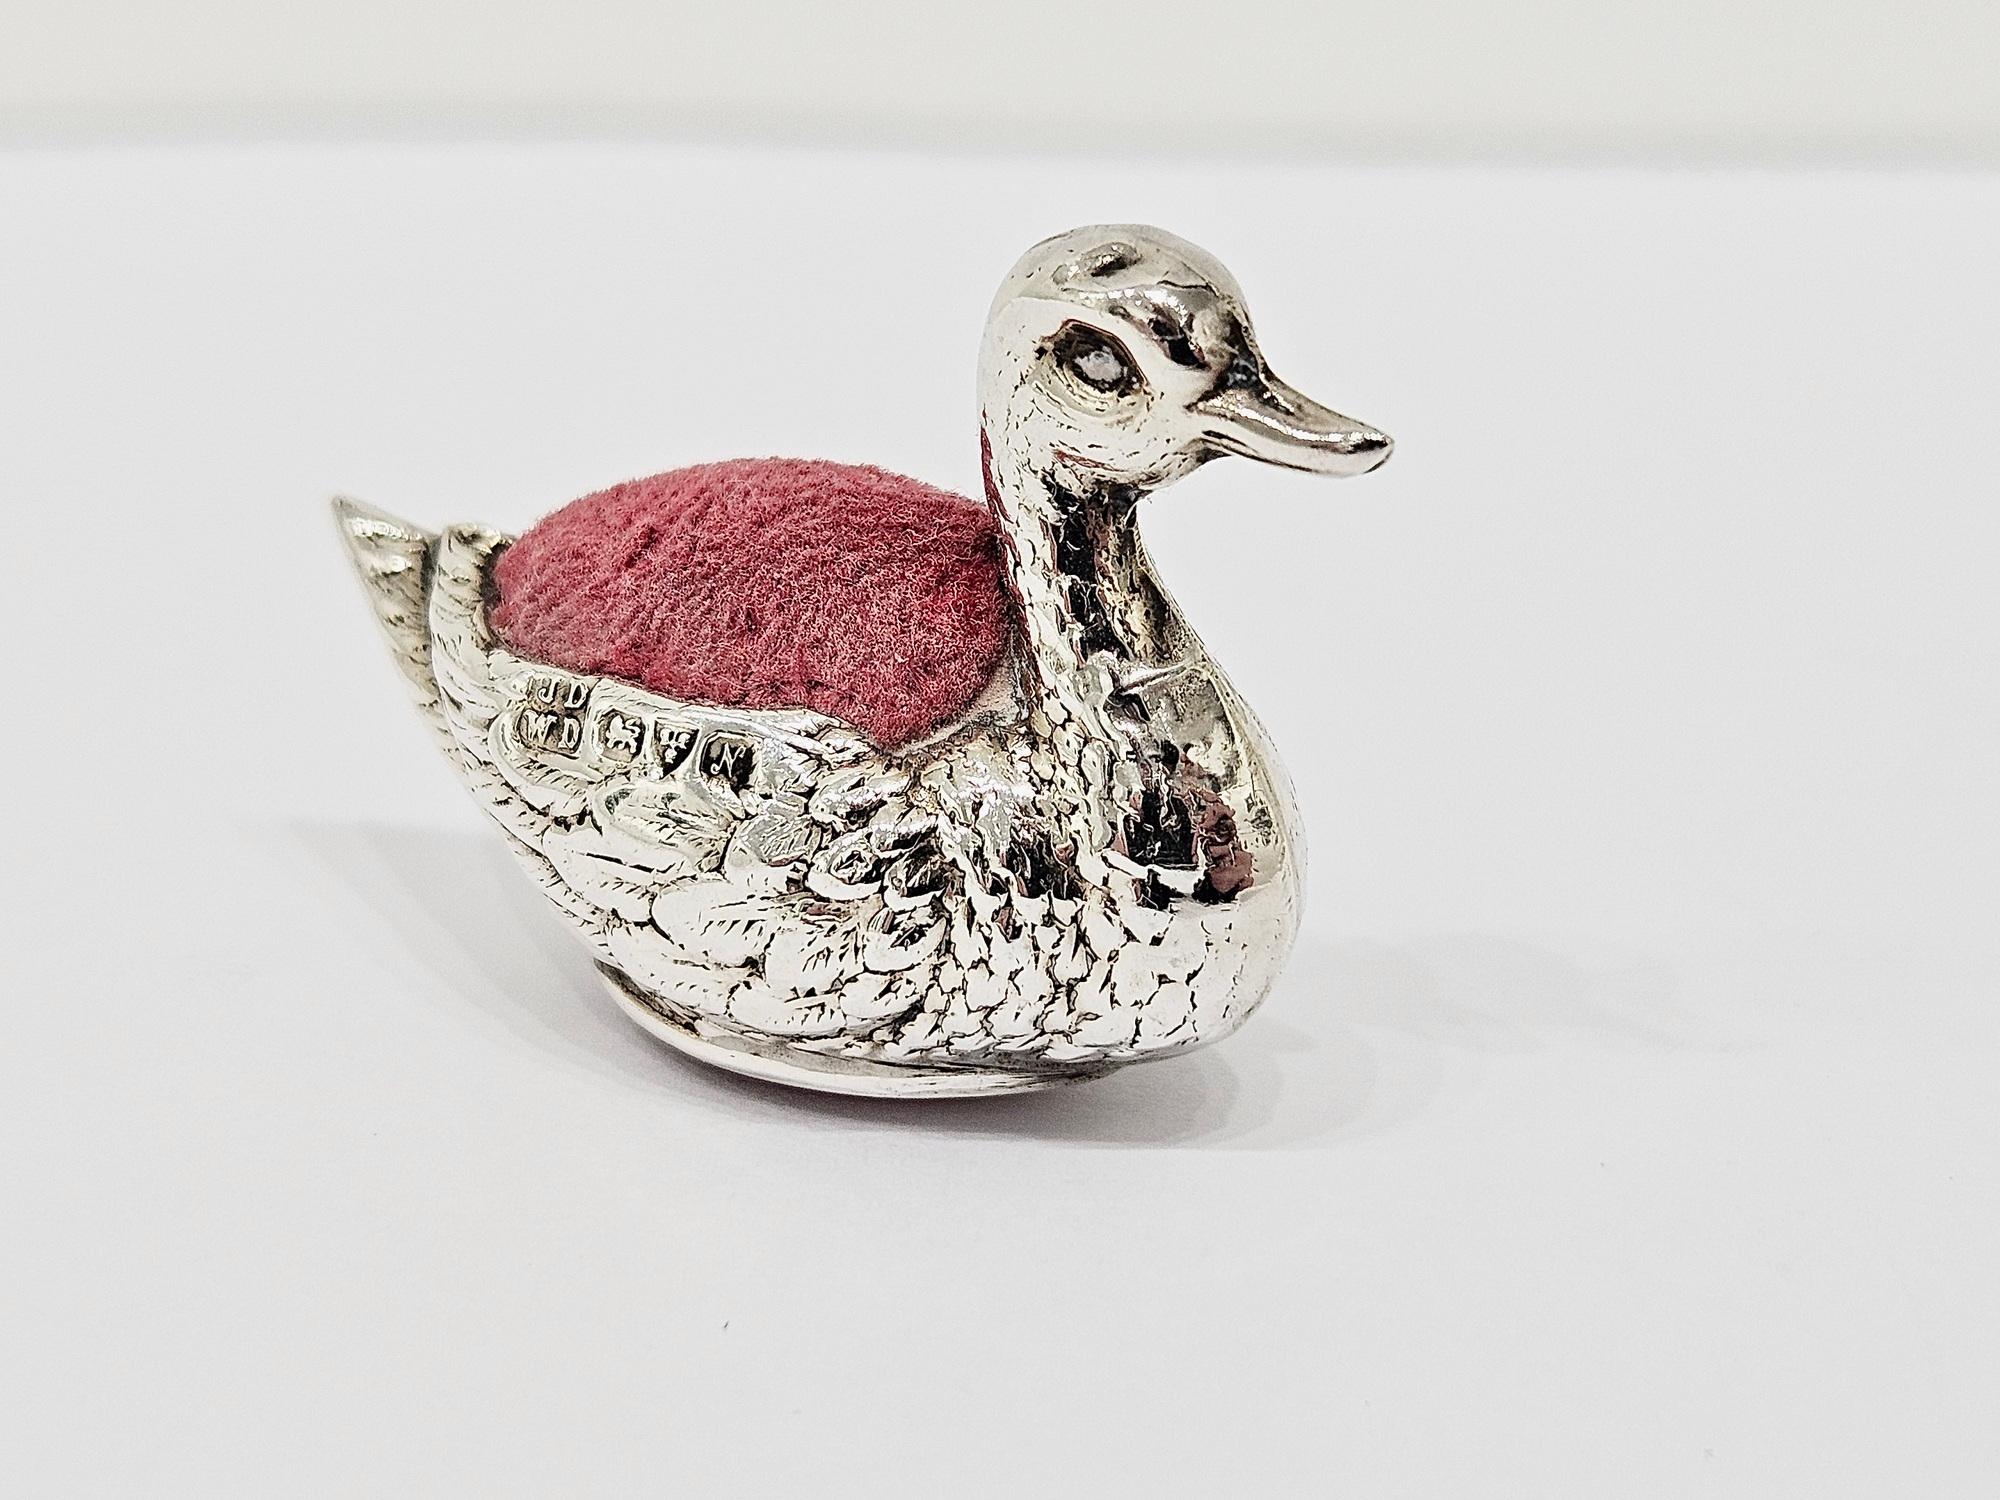 Ein Edwardian Neuheit Silber Nadelkissen realistisch modelliert als eine Miniatur-Ente, komplett mit rotem Samt Kissen und Basis. Die Punzierungen sind sehr deutlich und zeigen, dass sie 1913 von James Deakin & Sons (John & William F Deakin) in